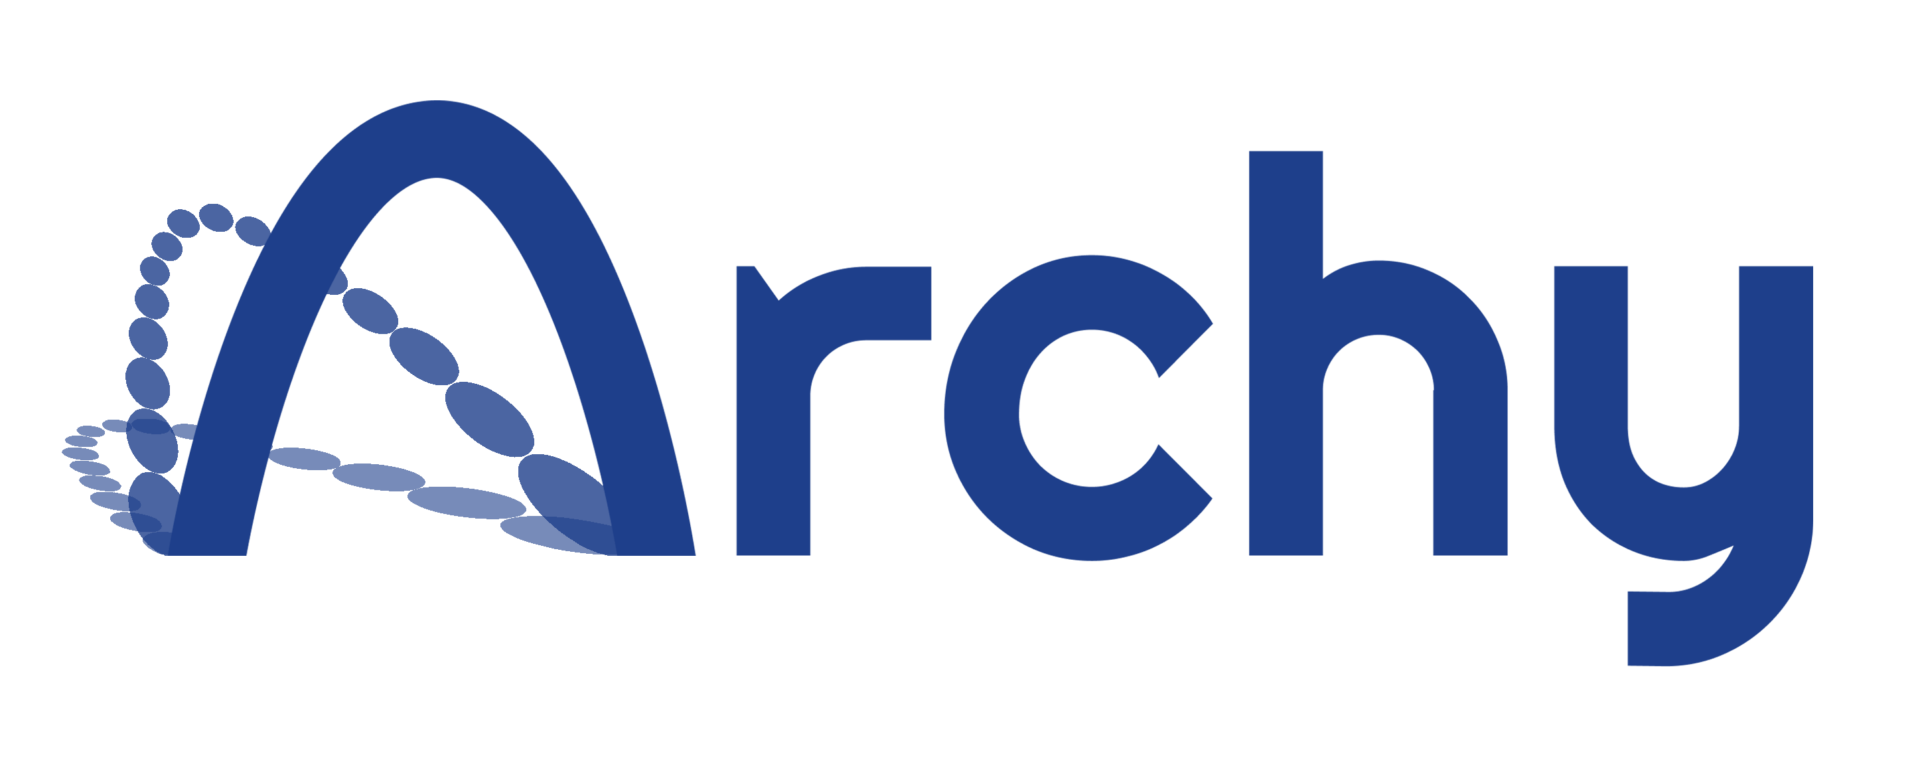 Archy_Blue